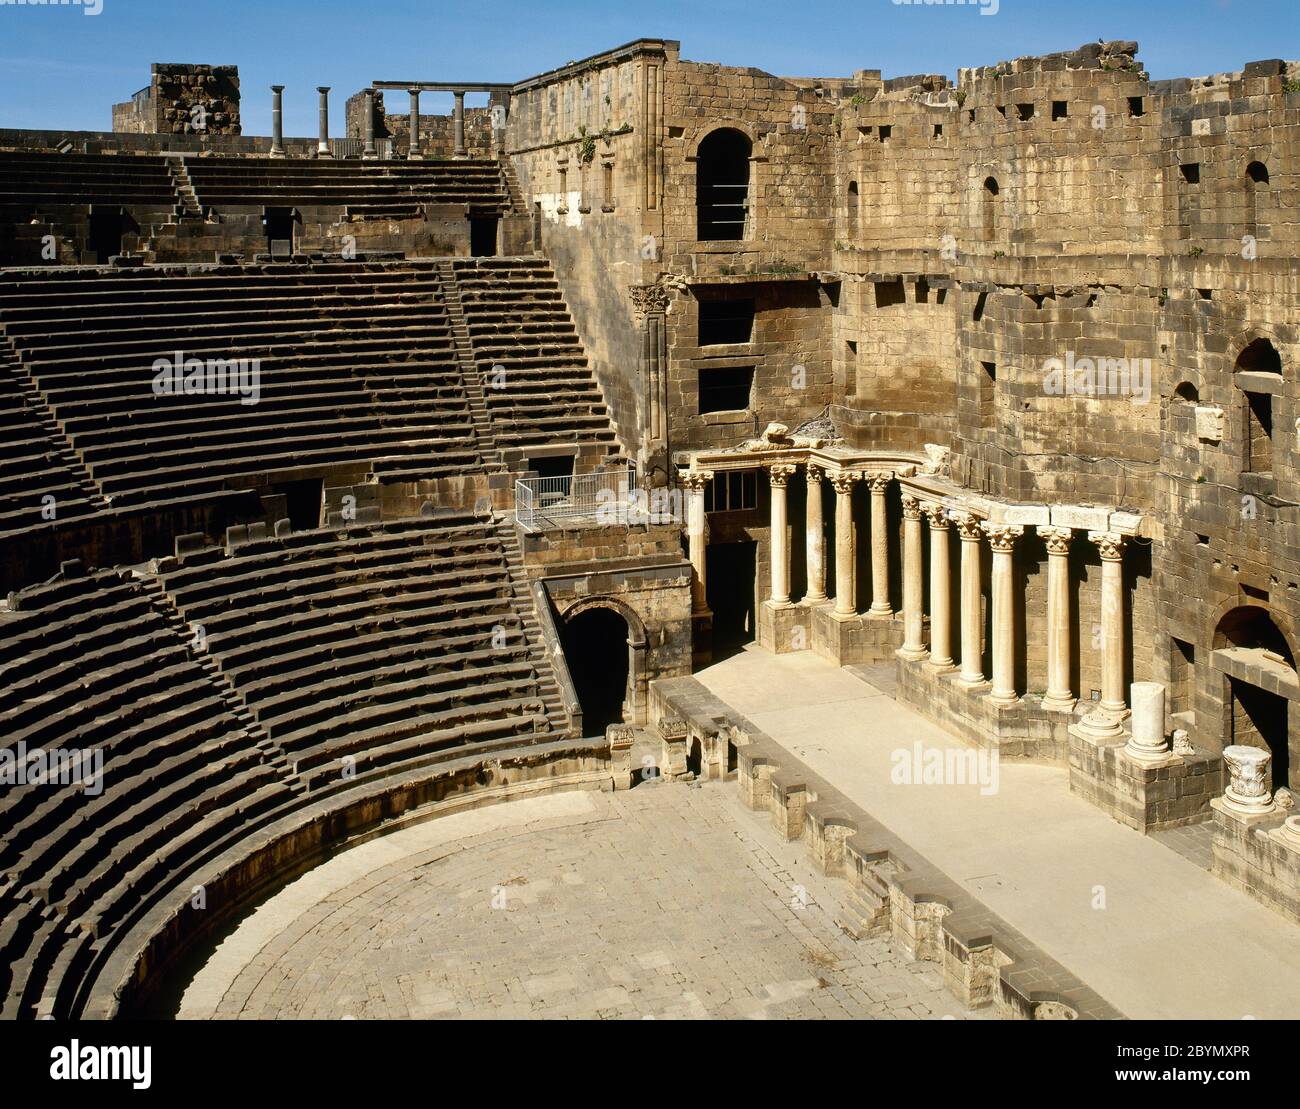 Syrien. Bosra. Römisches Theater. Es wurde mit schwarzem Basalt gebaut. 2. Jahrhundert n. Chr., während der Herrschaft von Trajan. Foto vor dem syrischen Bürgerkrieg. Stockfoto